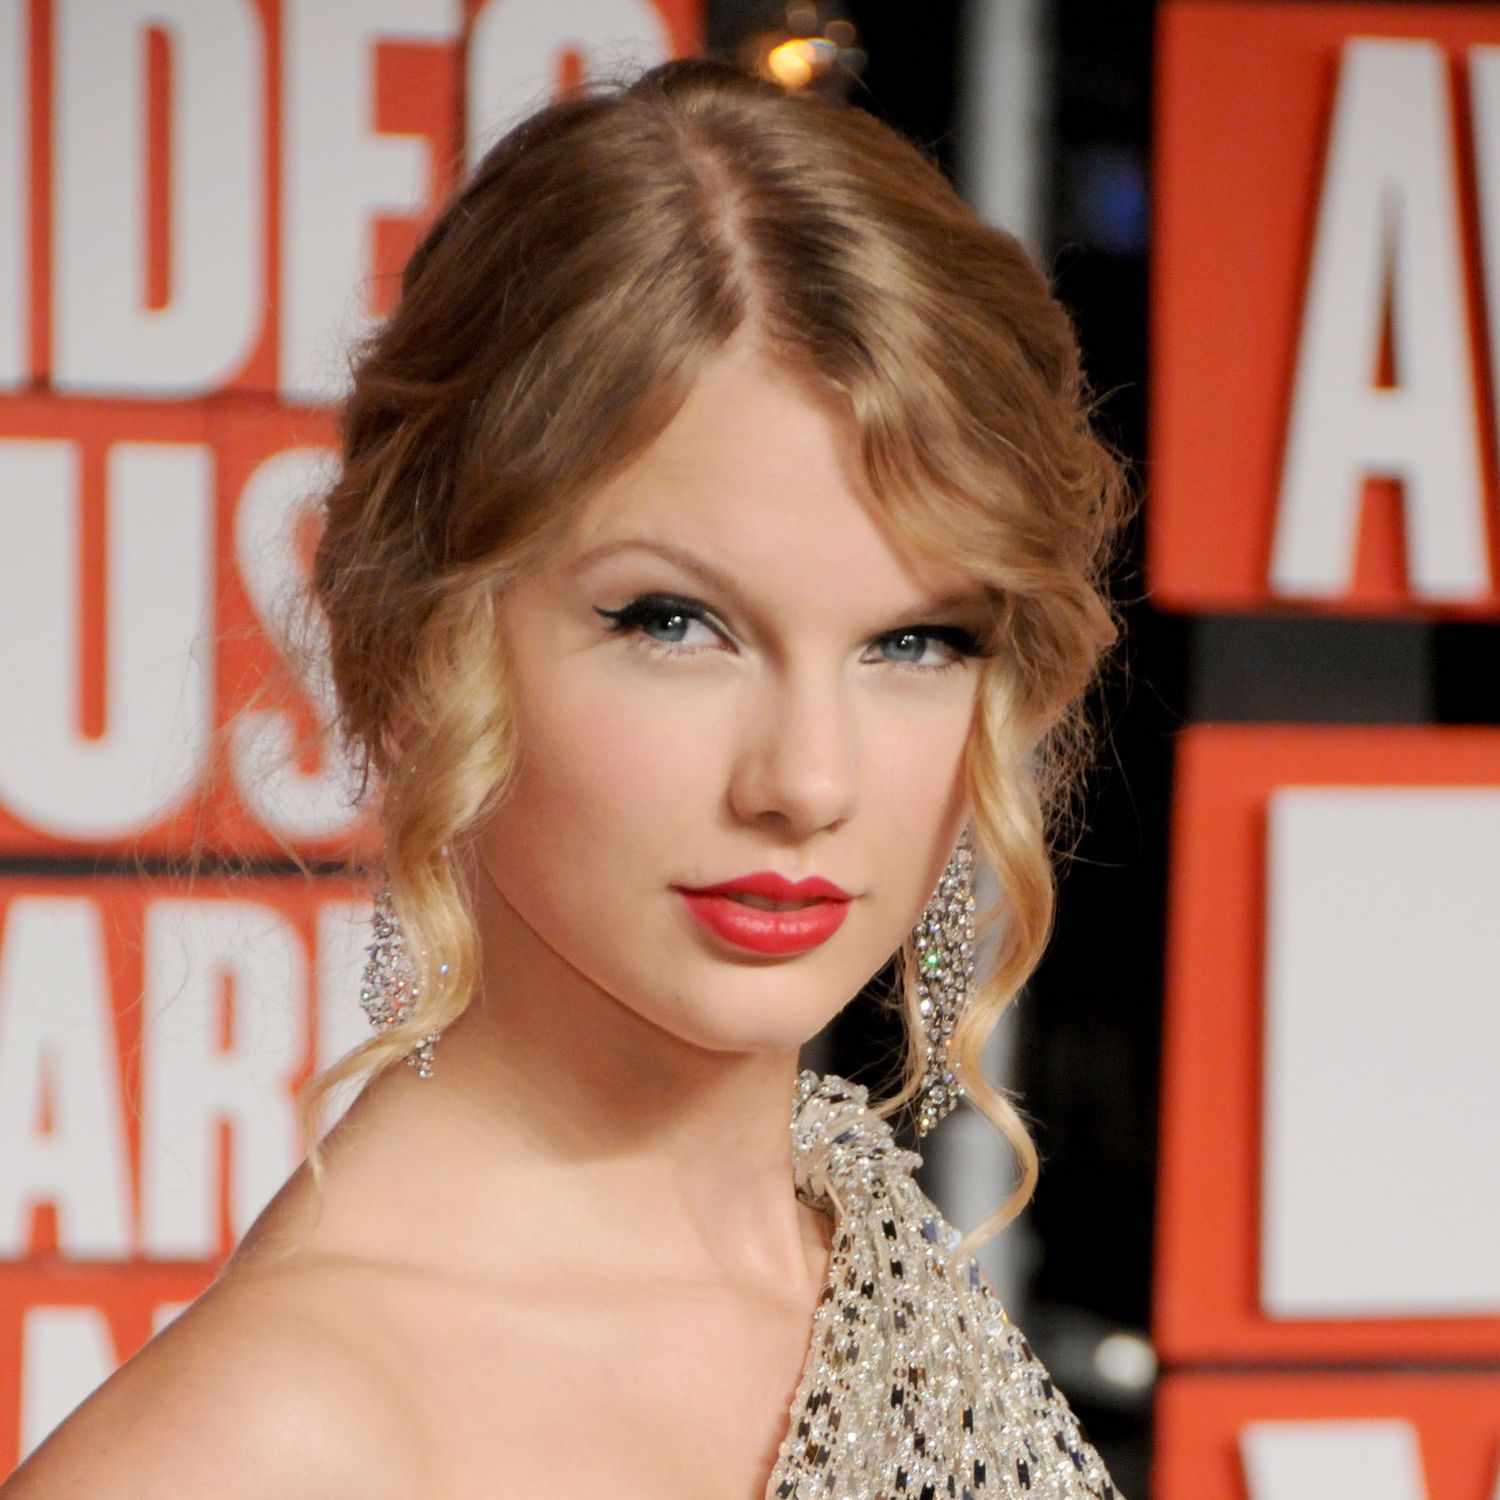 泰勒·斯威夫特(Taylor Swift)在2009年MTV vma颁奖礼上穿了一个低盘发和柔软的卷发